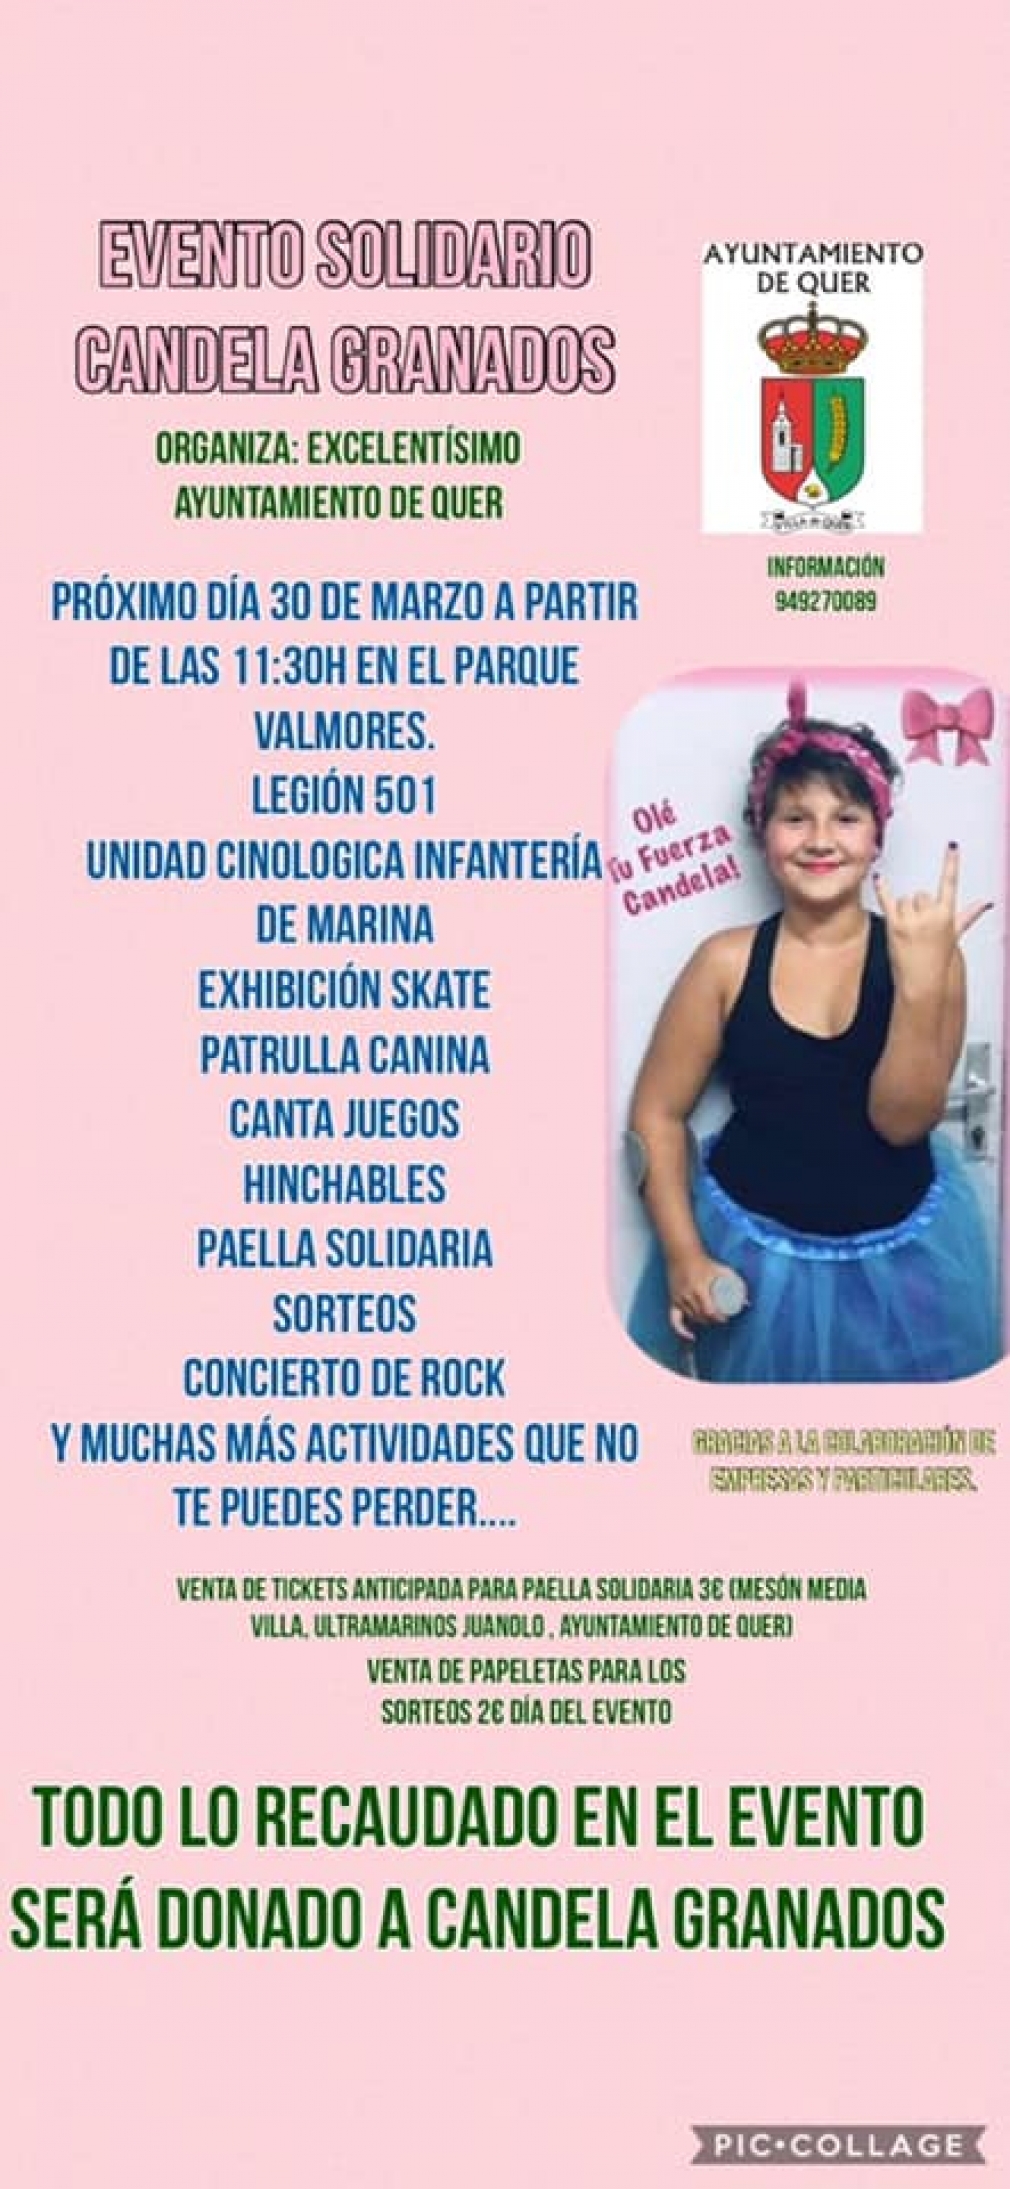 El sábado, 30 de marzo, gran evento solidario en favor de Candela Granados